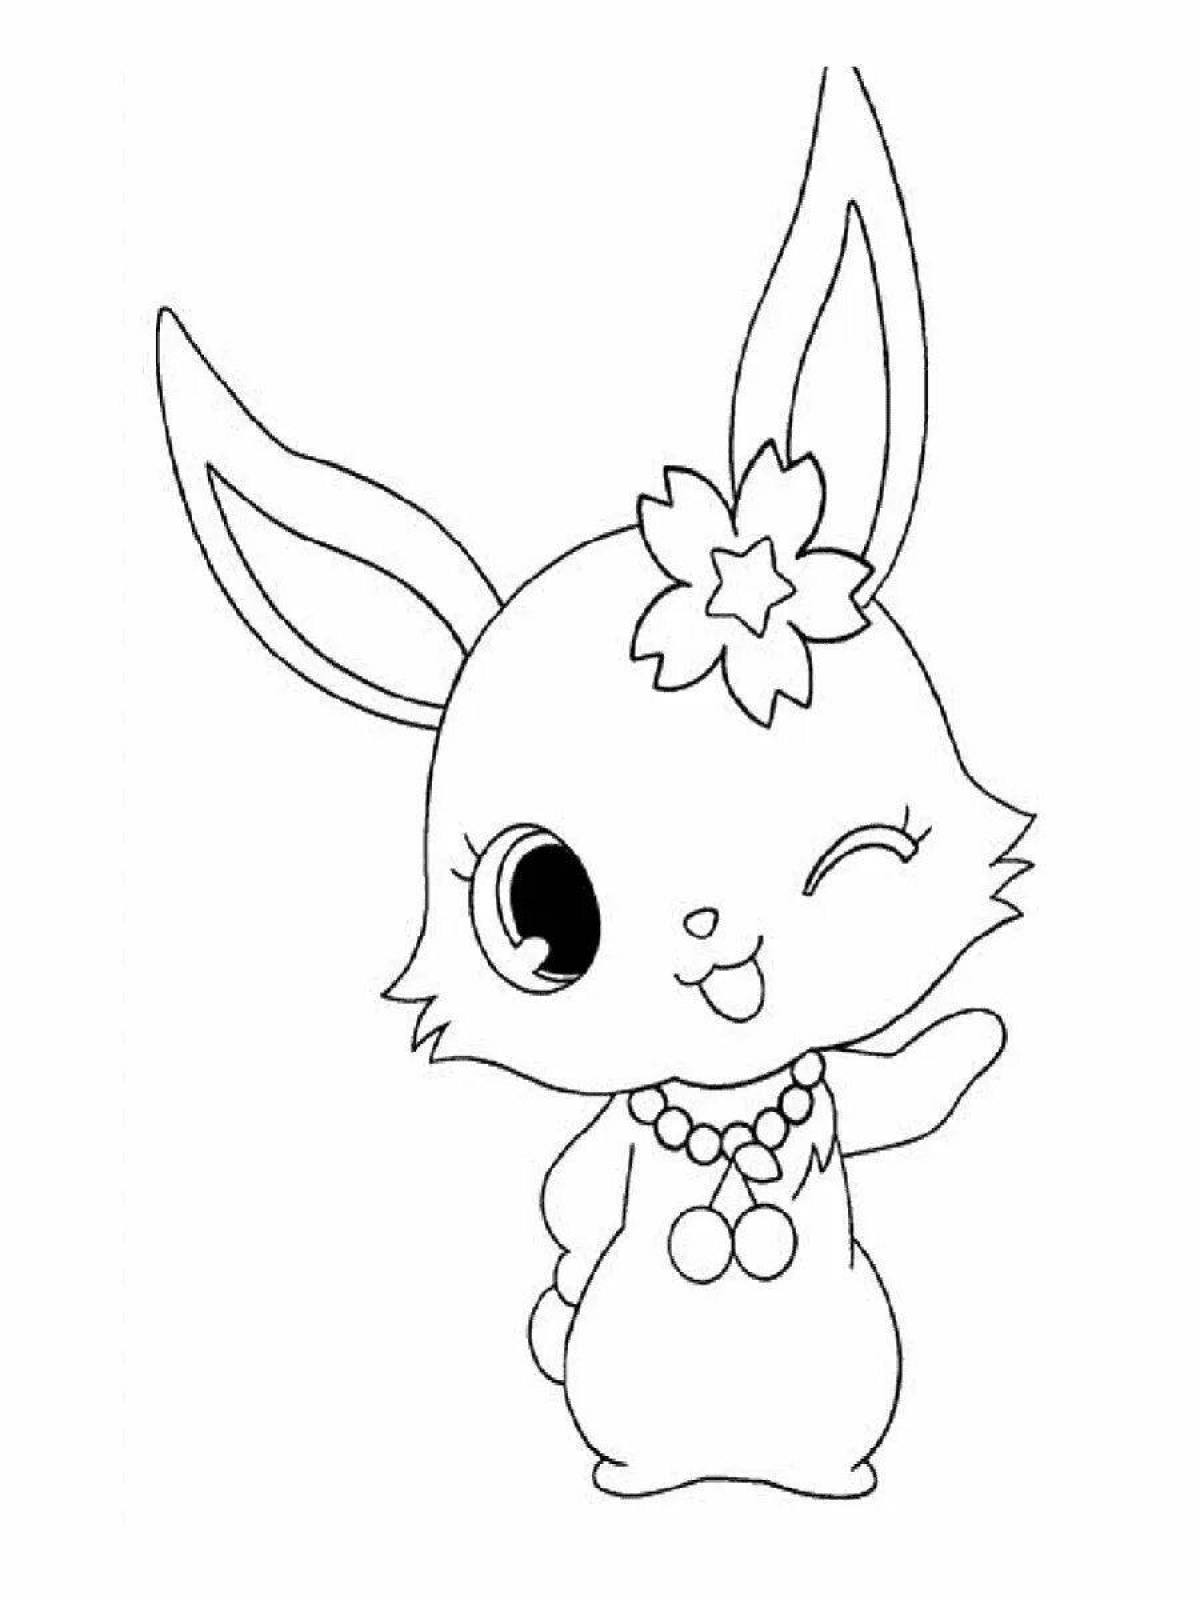 Colouring serene anime rabbit